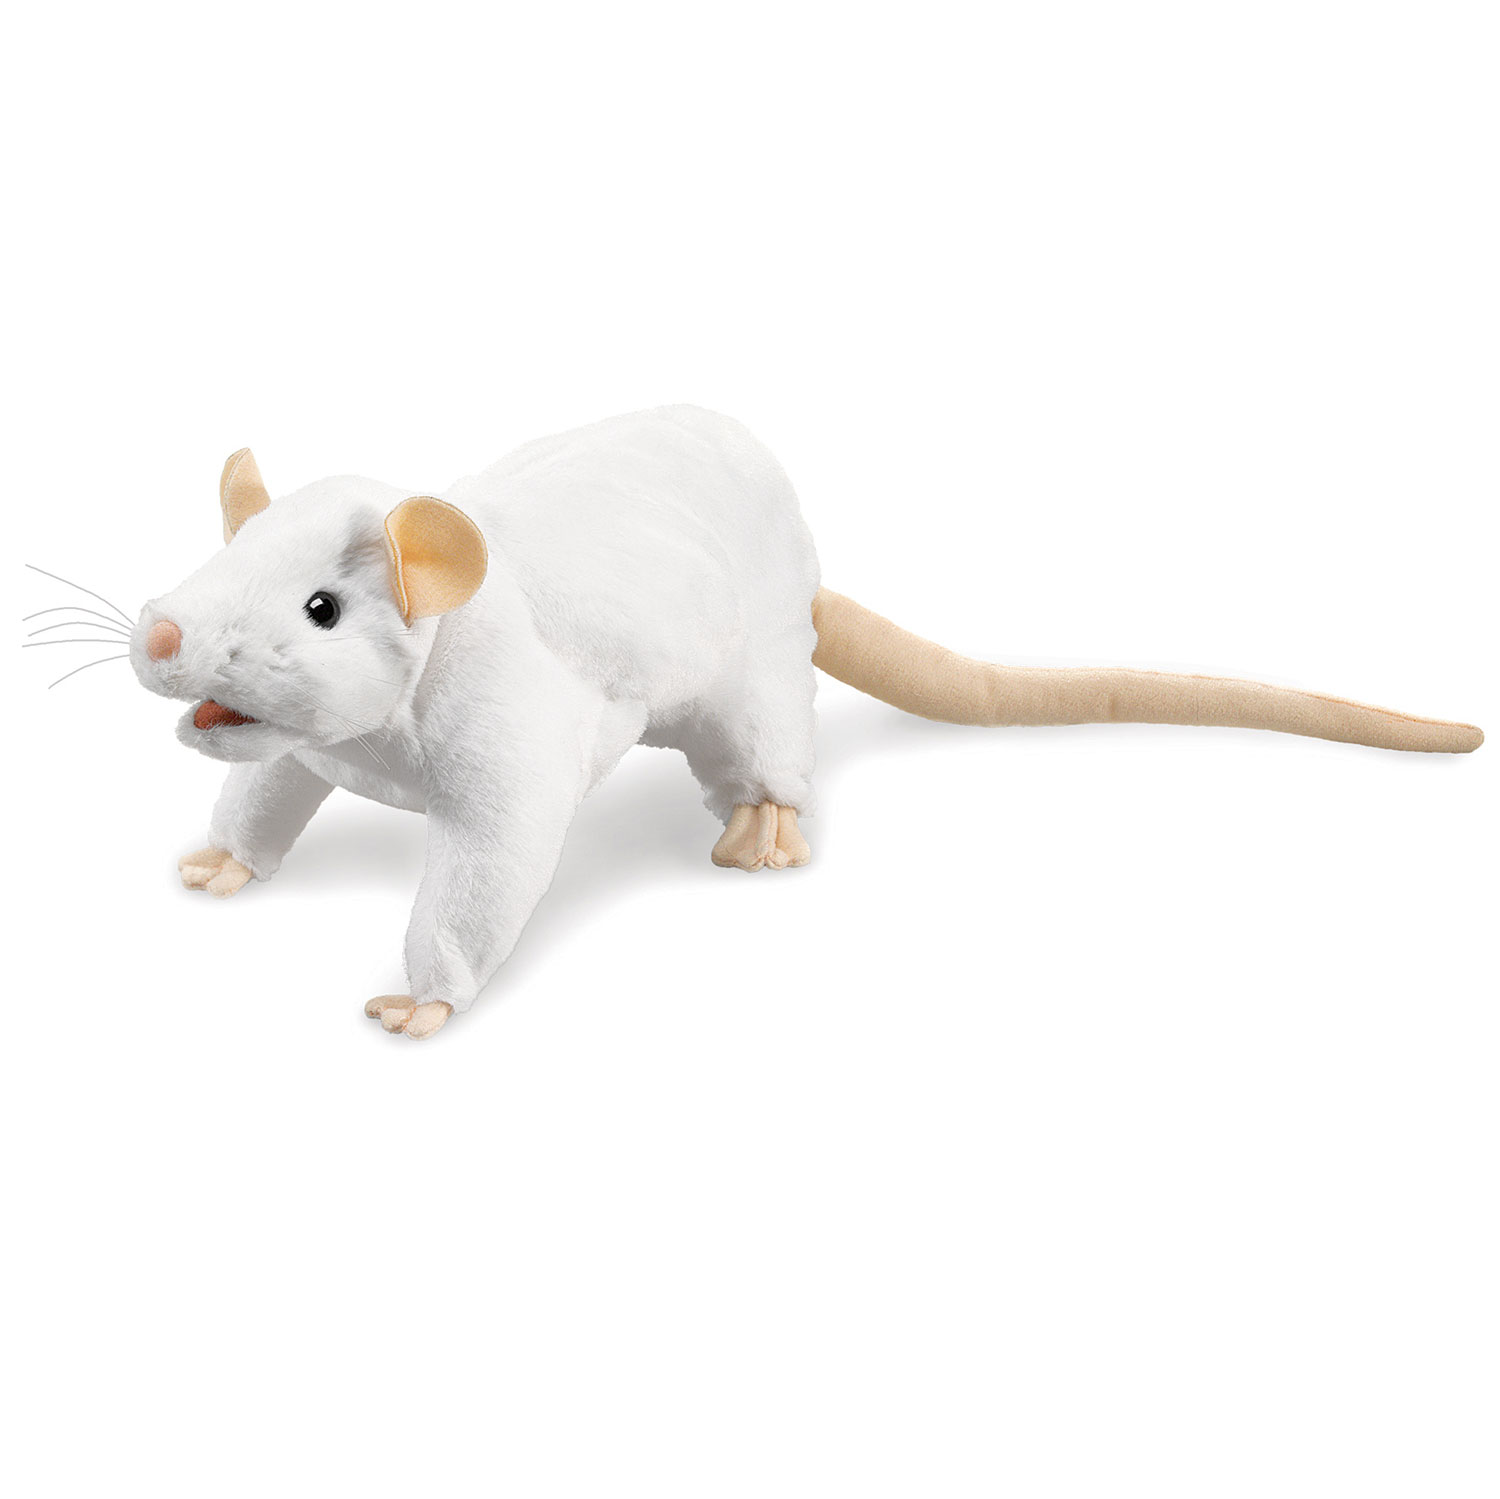 Weiße Ratte / White Rat